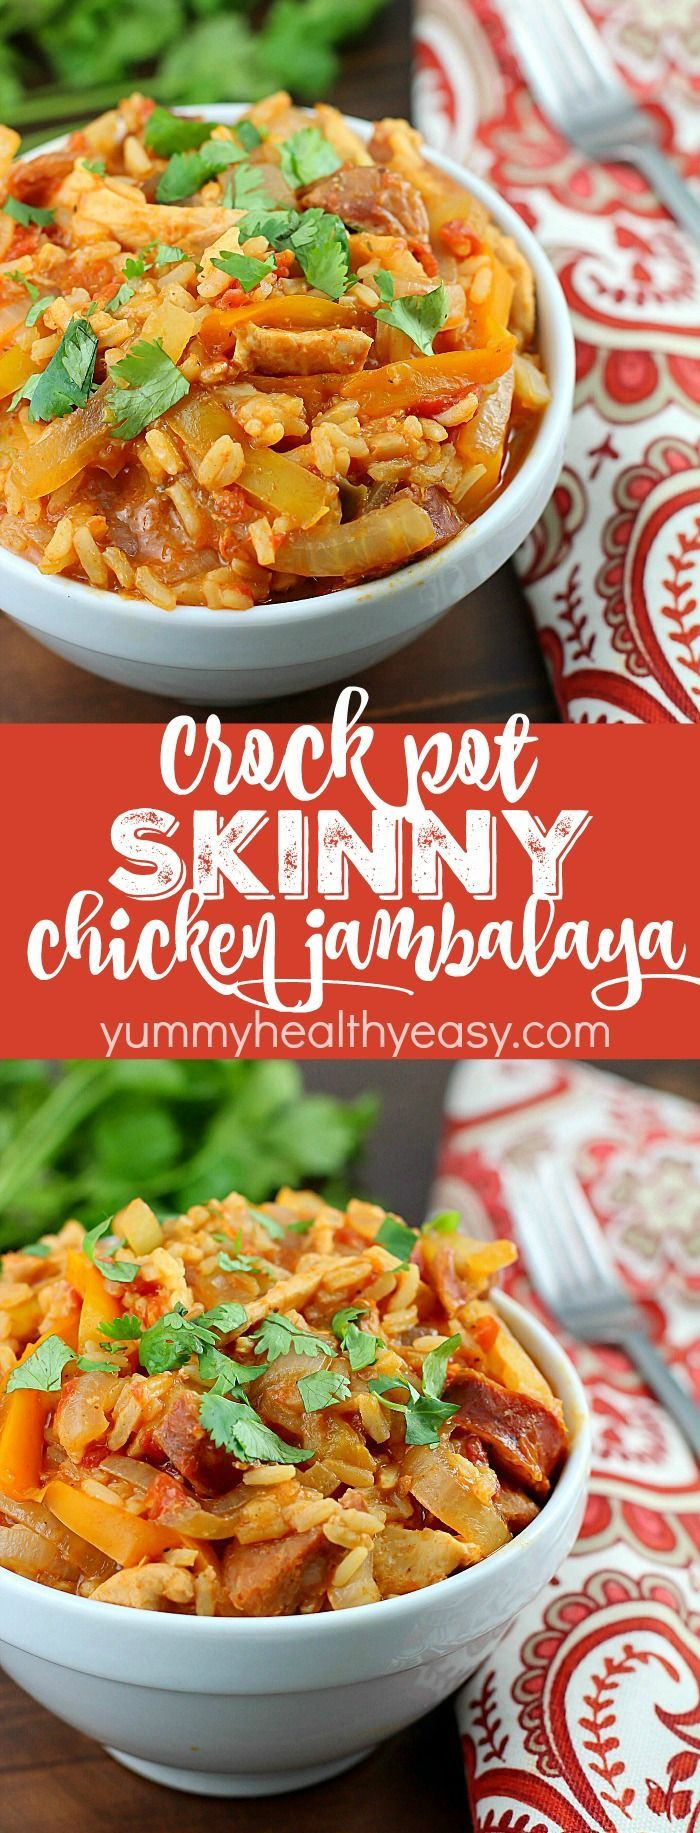 Low Calorie Chicken Crock Pot Recipes
 Crock Pot Skinny Chicken Jambalaya Low calorie tastes